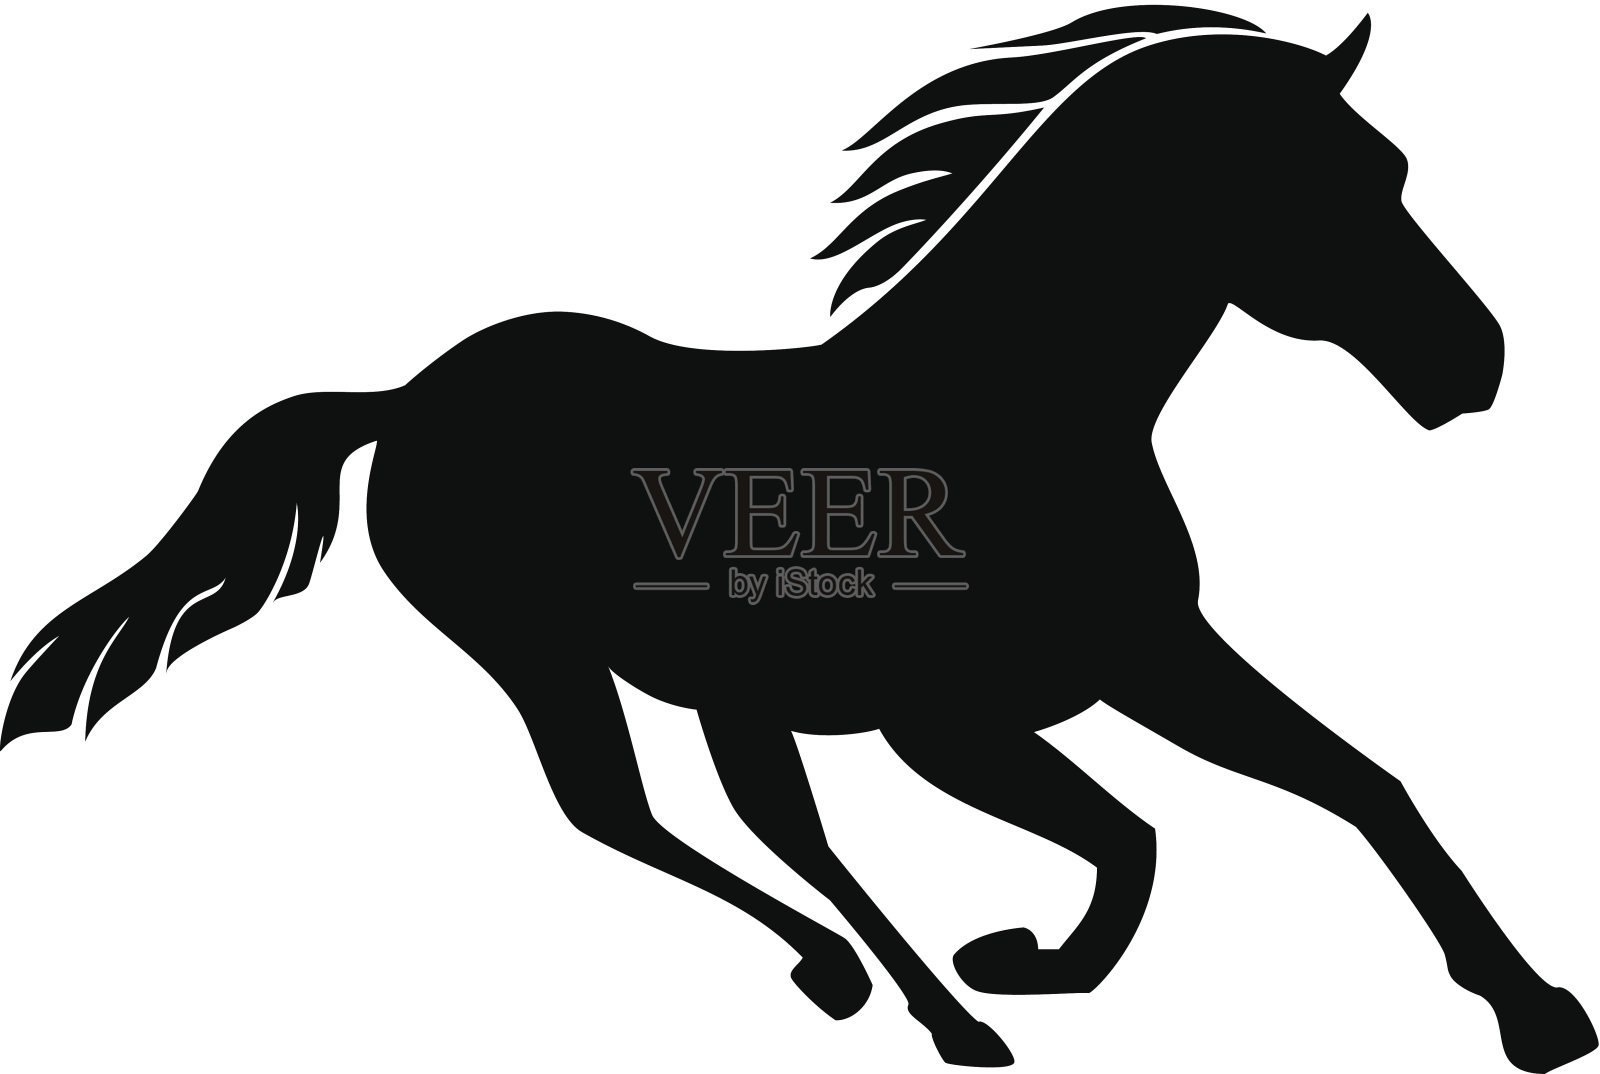 一匹奔跑的马的黑白照片插画图片素材